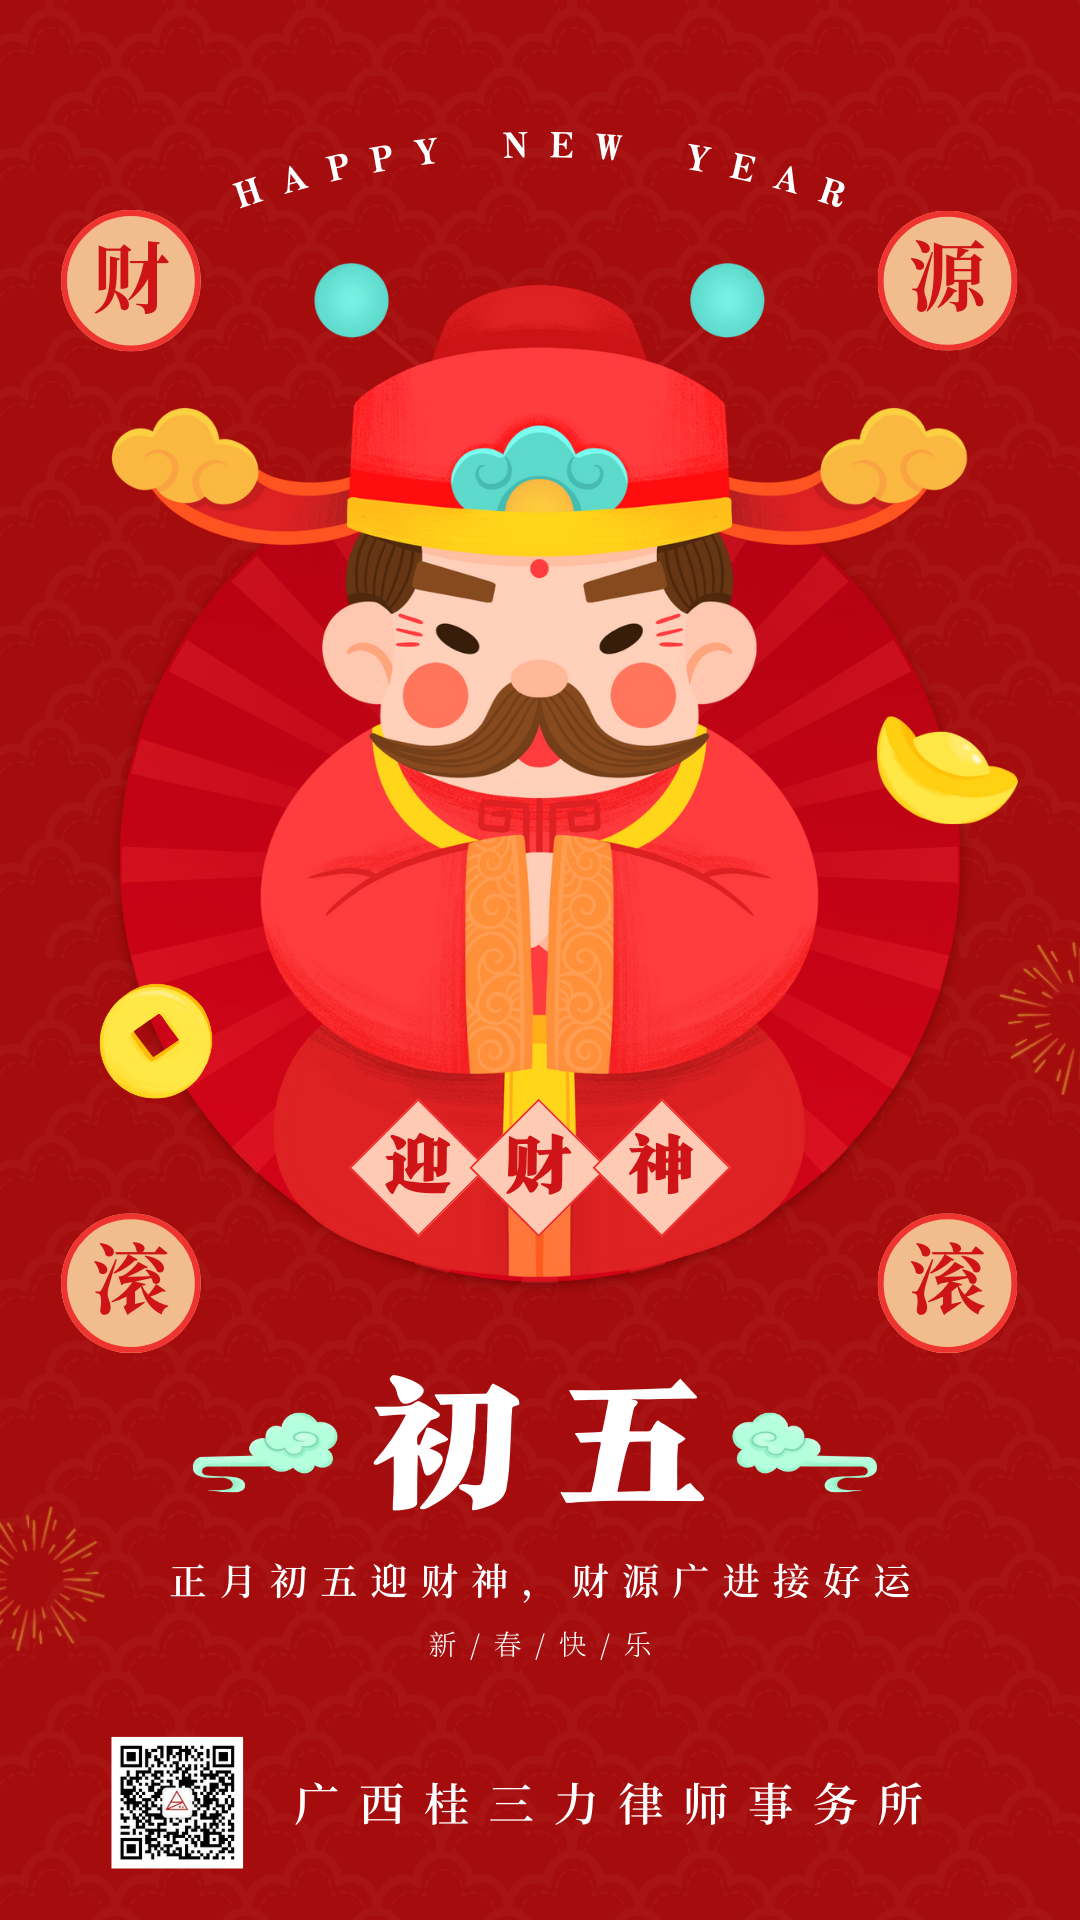 正月初五•喜迎财神|广西桂三力律师事务所祝各位金龙送财、五福临门